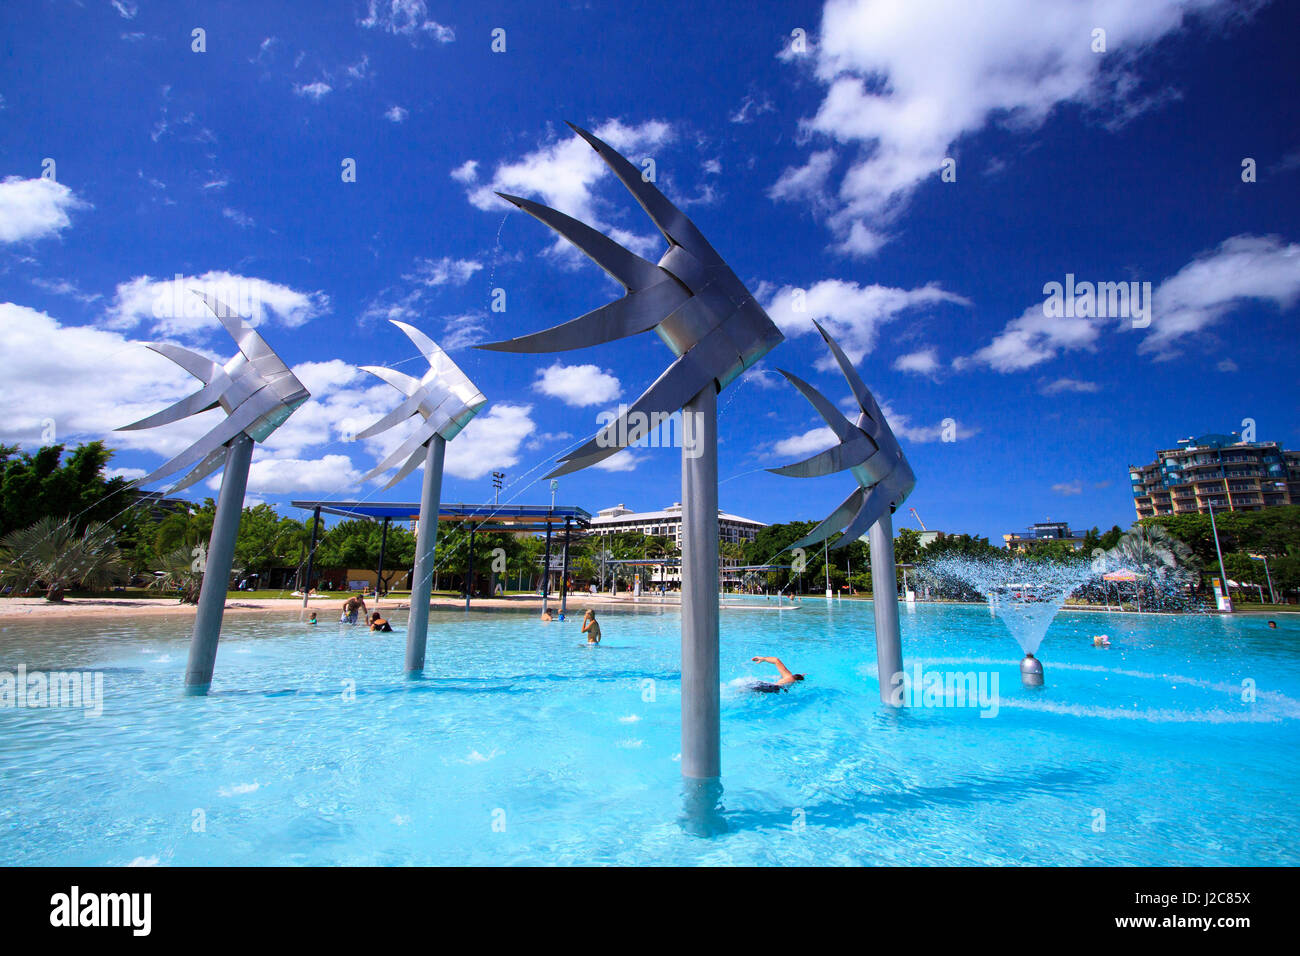 Le poisson géant statues sont une caractéristique bien connue de l'Esplanade de Cairns Lagoon. Le Queensland, Australie. Banque D'Images